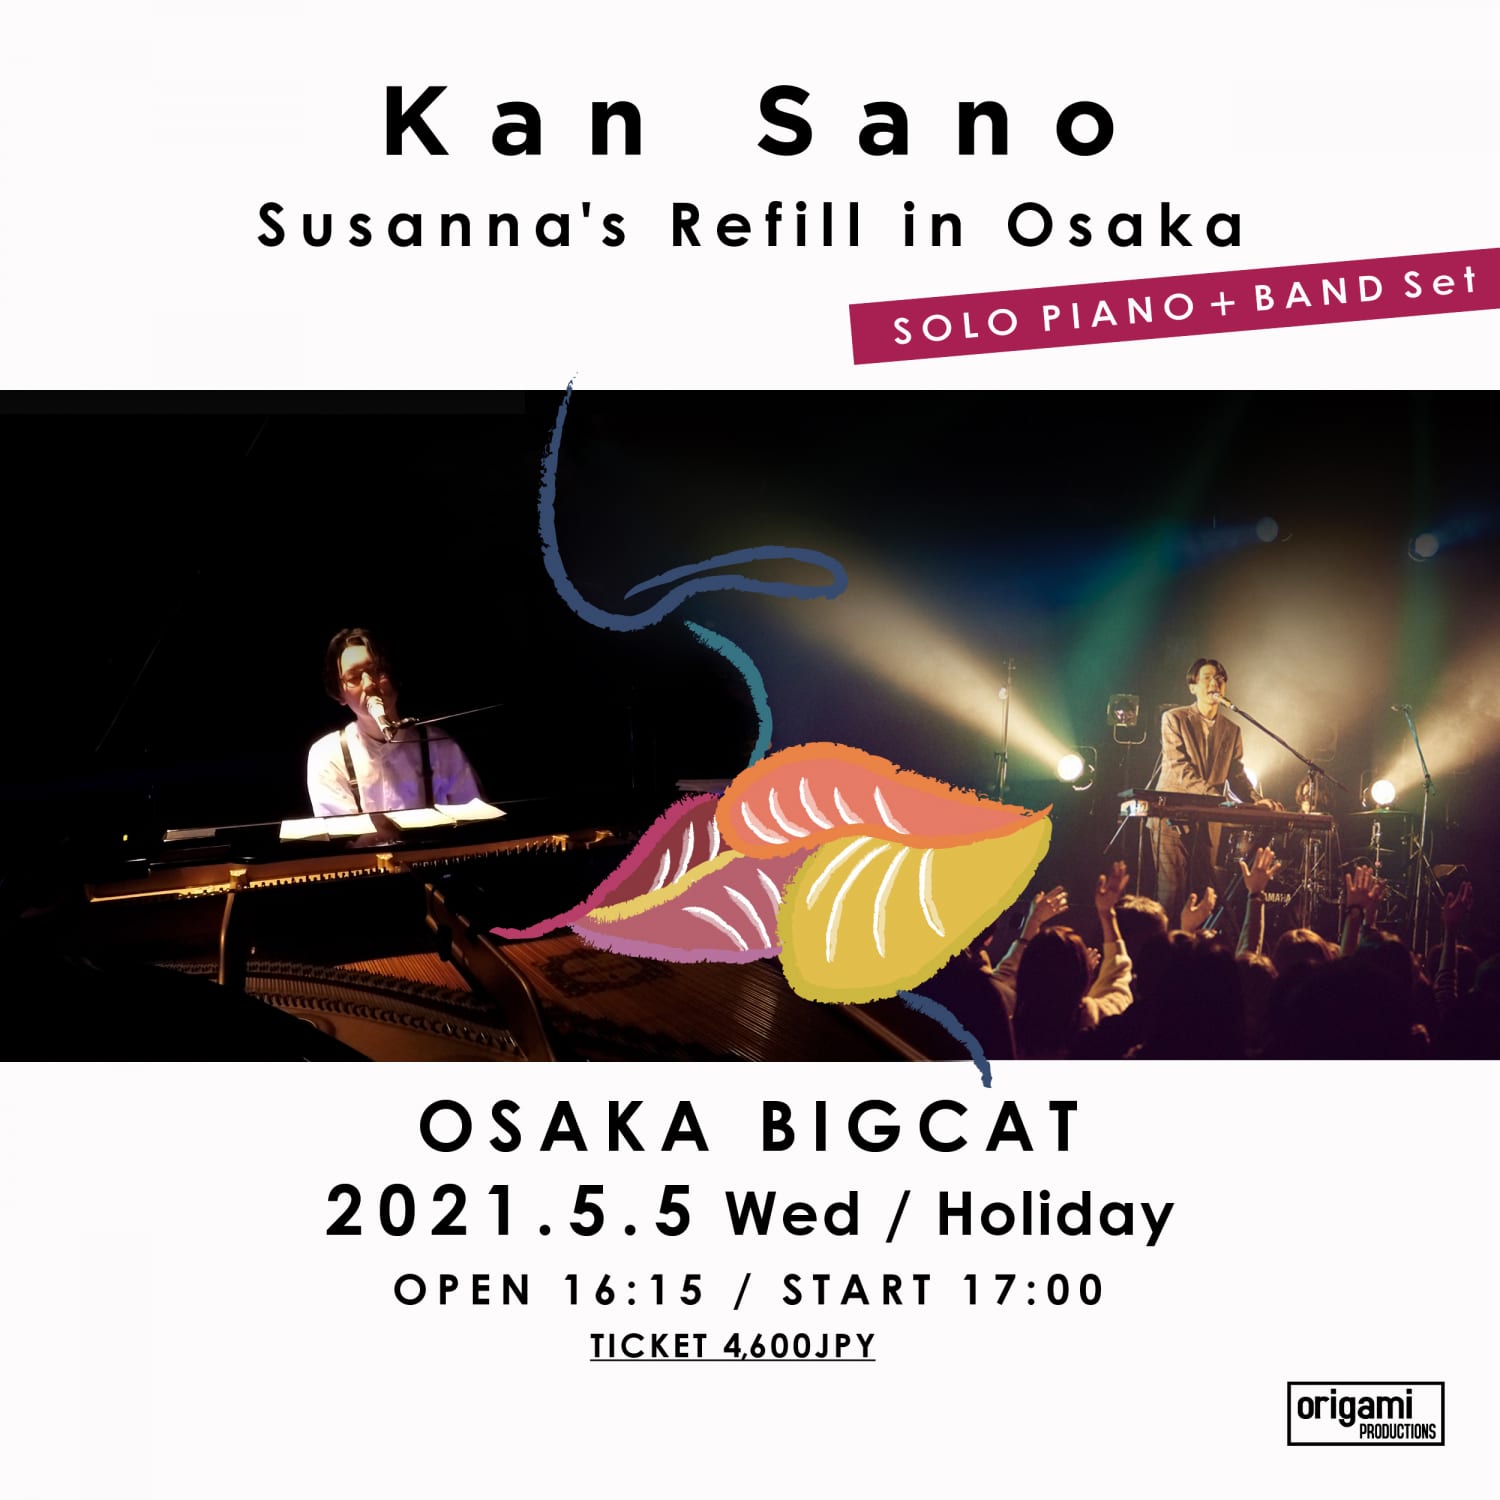 kan sano「Susanna’s Refill in Osaka (SOLO PIANO＋BAND Set)」の写真